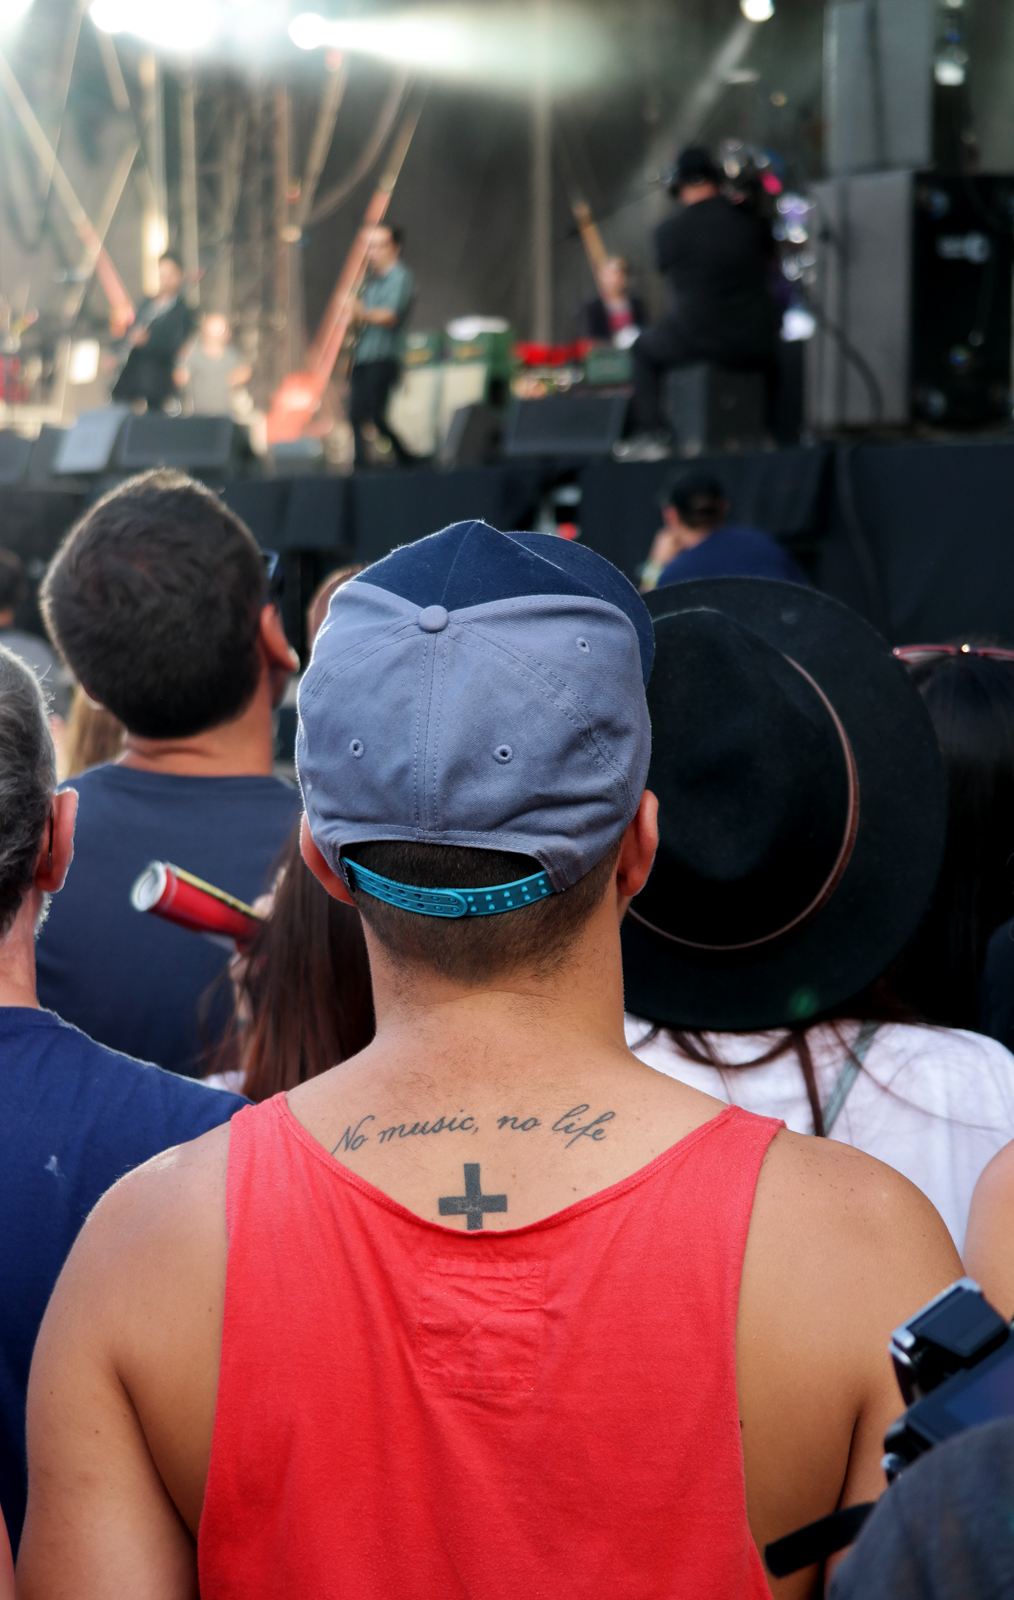 Rock en Seine 2015 festival No music no life tattoo tatouage dans le dos d un festivalier devant live Stereophonics photo by united states of paris blog